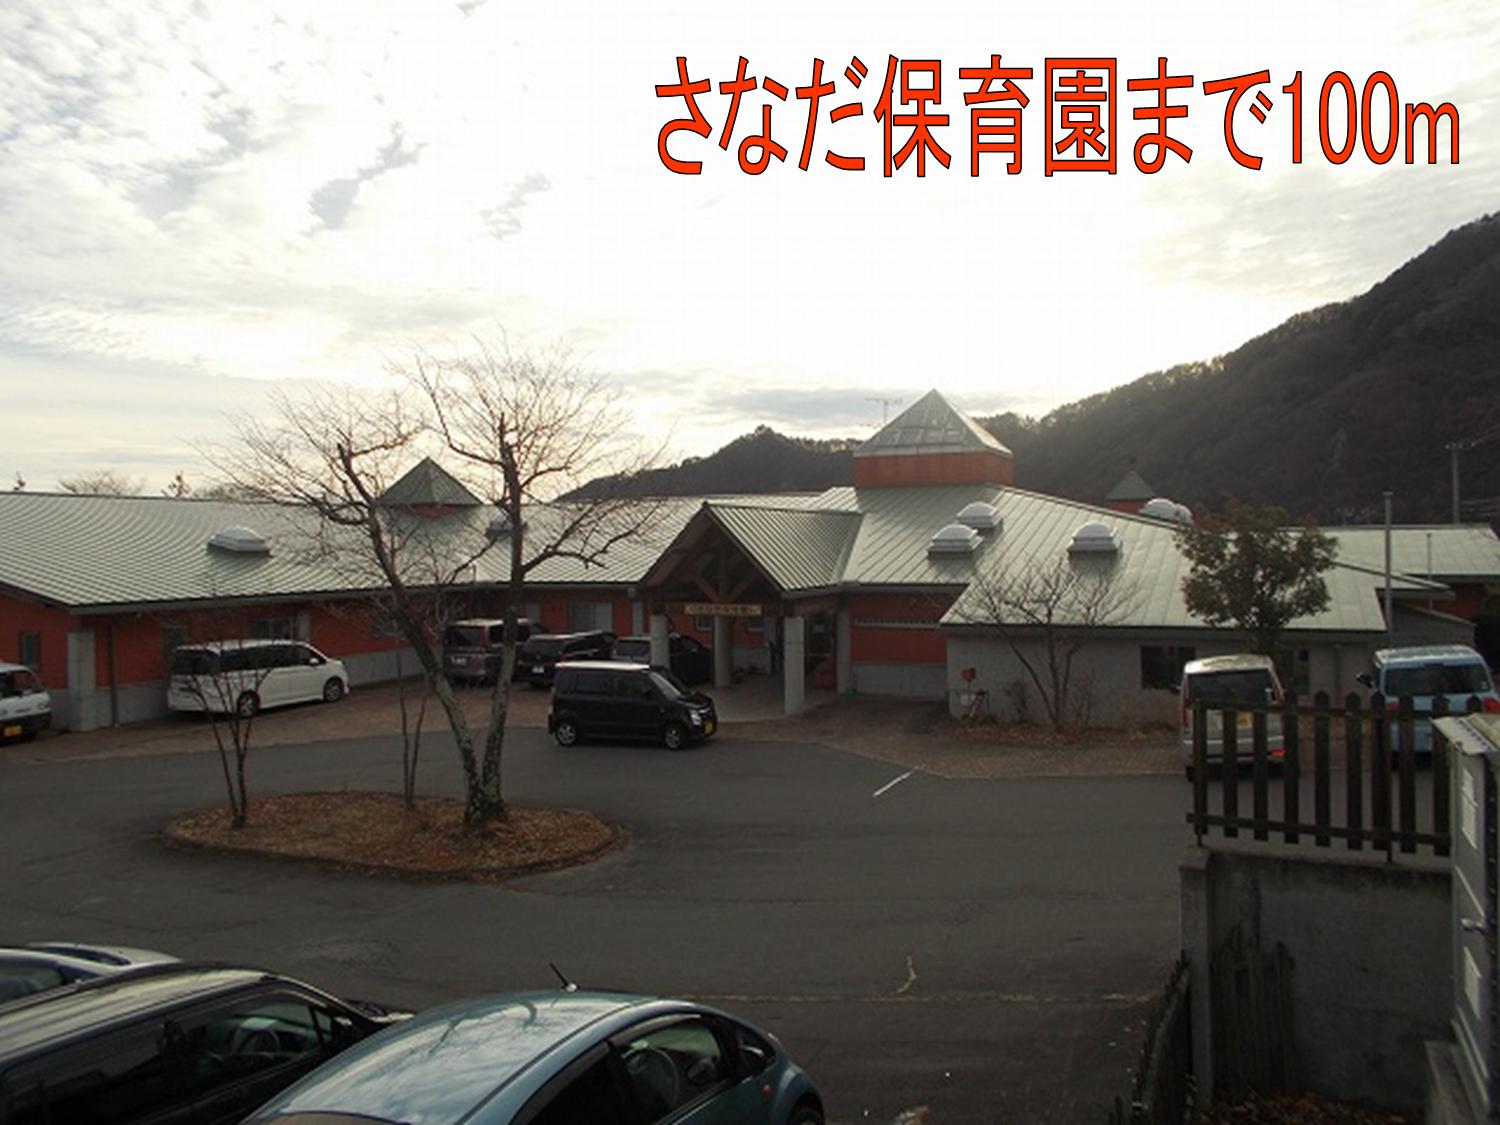 kindergarten ・ Nursery. Sanada nursery school (kindergarten ・ Nursery school) up to 100m